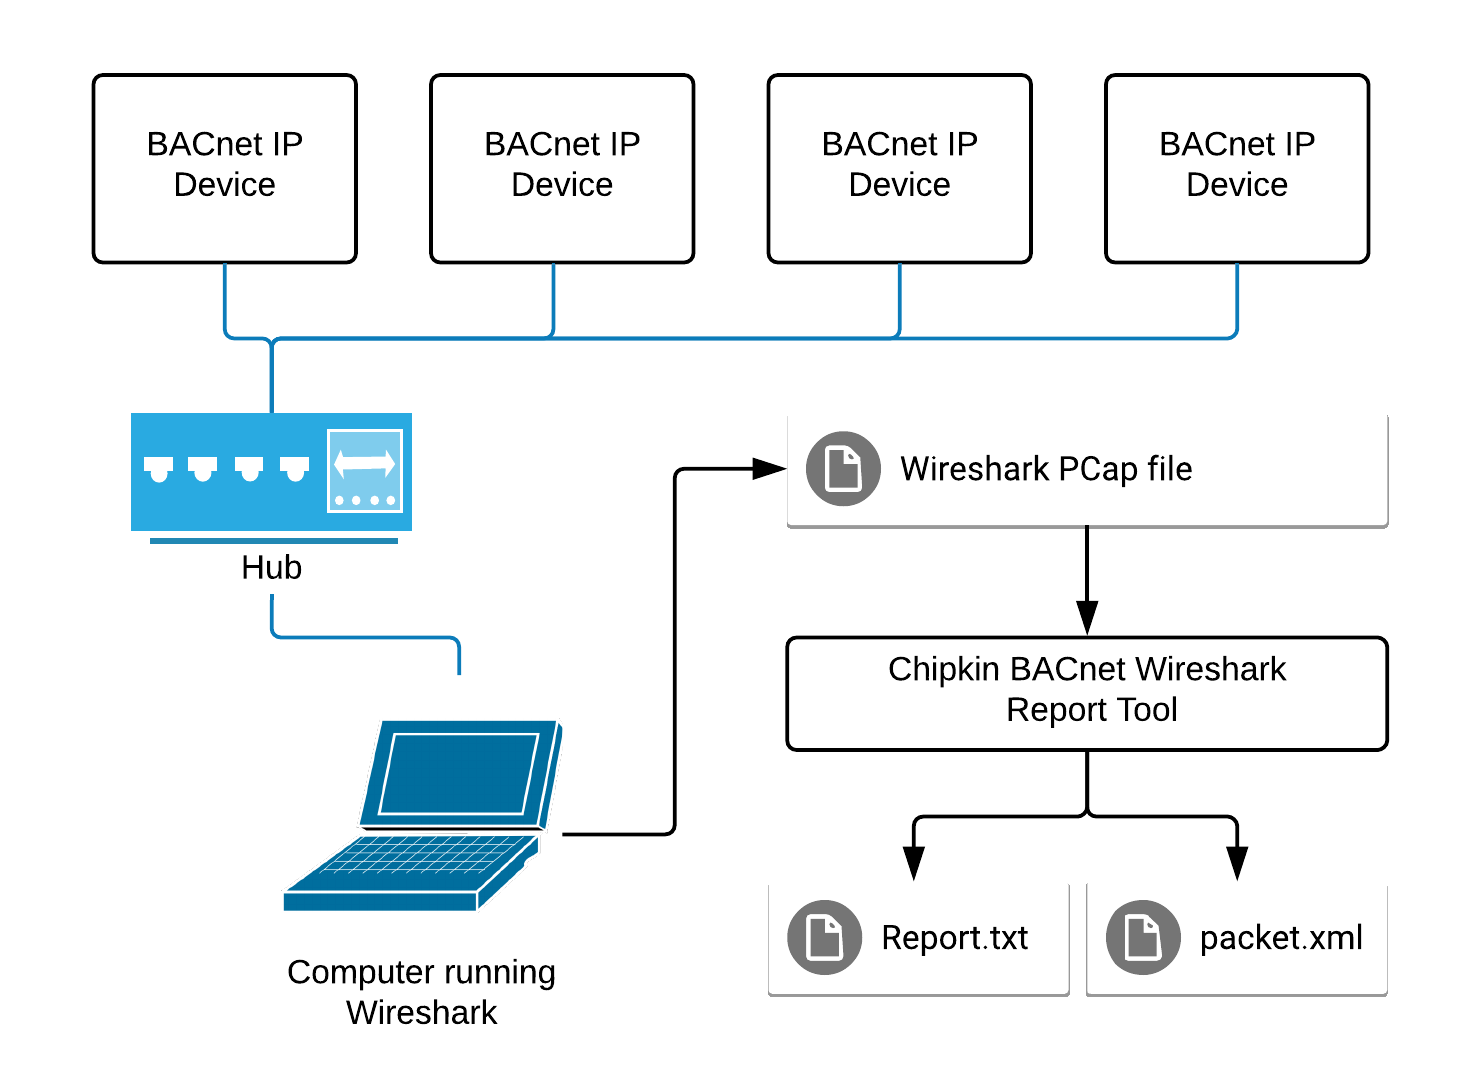 Захват wireshark. Wireshark блок схема. Wireshark схема с сетью. Виды протоколов BACNET. Wireshark схема работы в локальной.